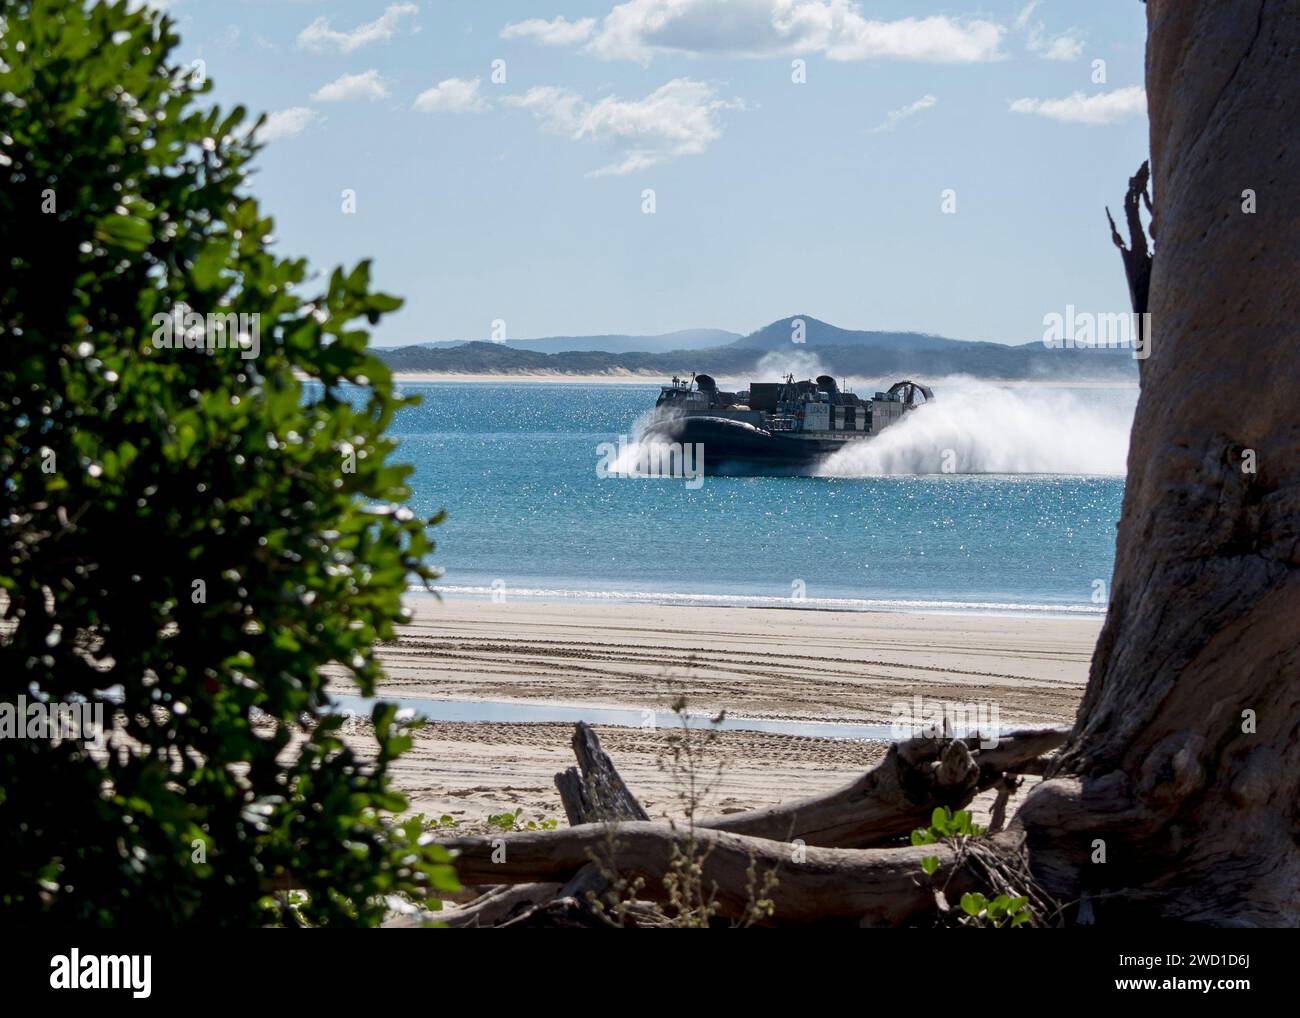 Ein Luftkissen des Landungsbootes landet am Freshwater Beach, Australien. Stockfoto